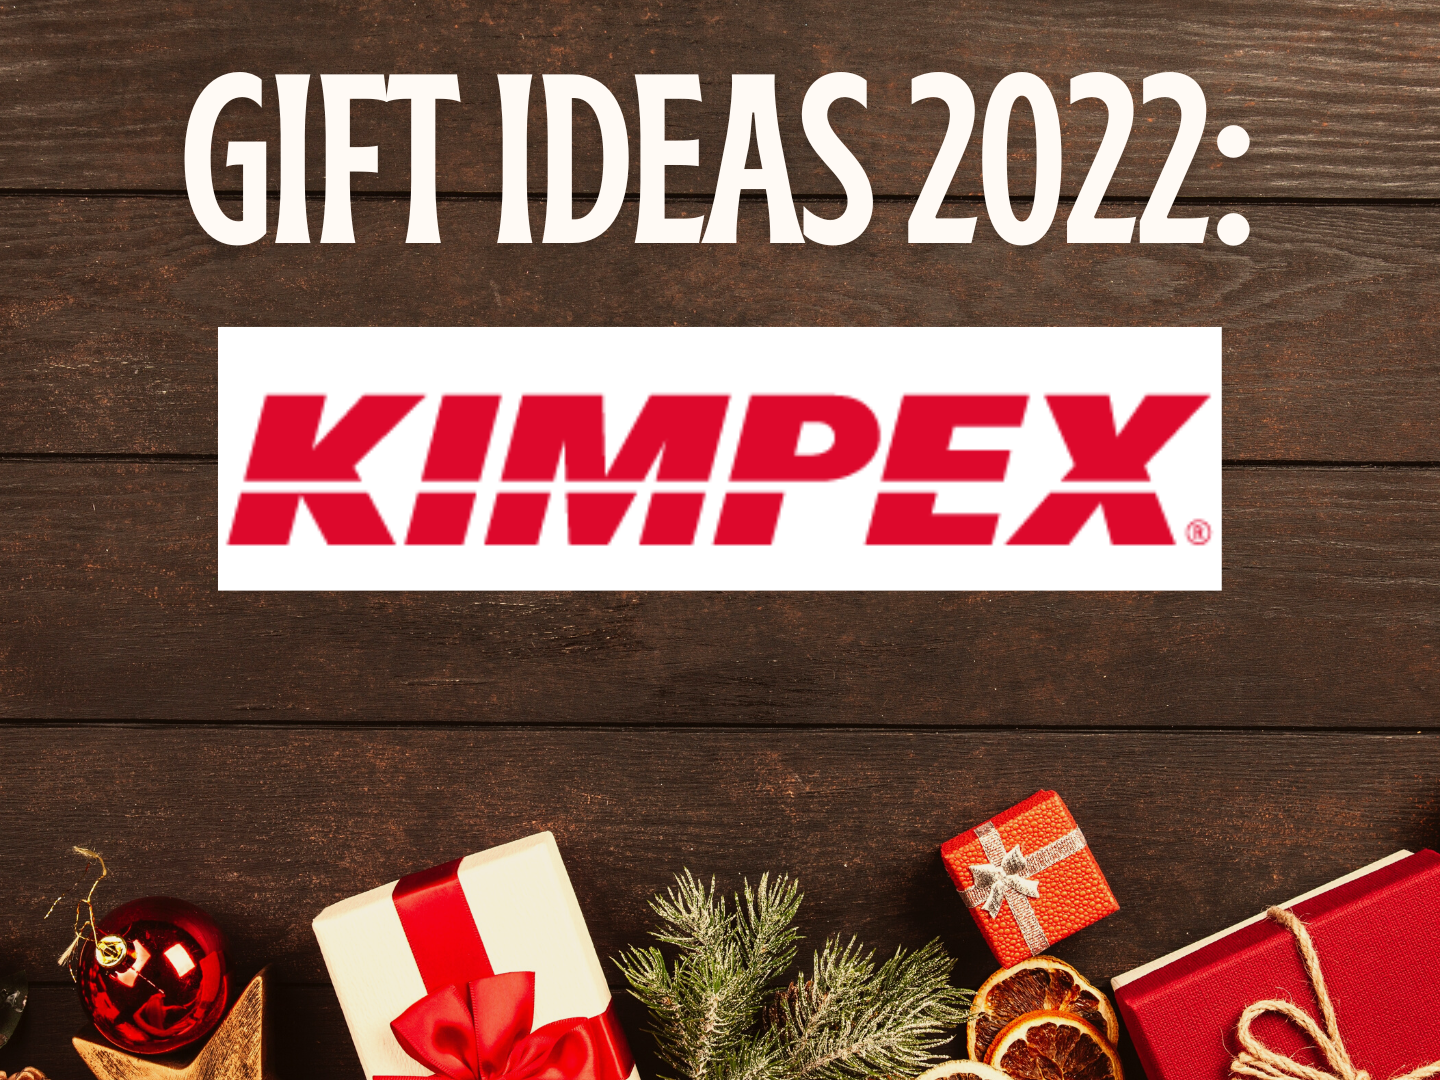 Gift ideas 2022 Kimpex